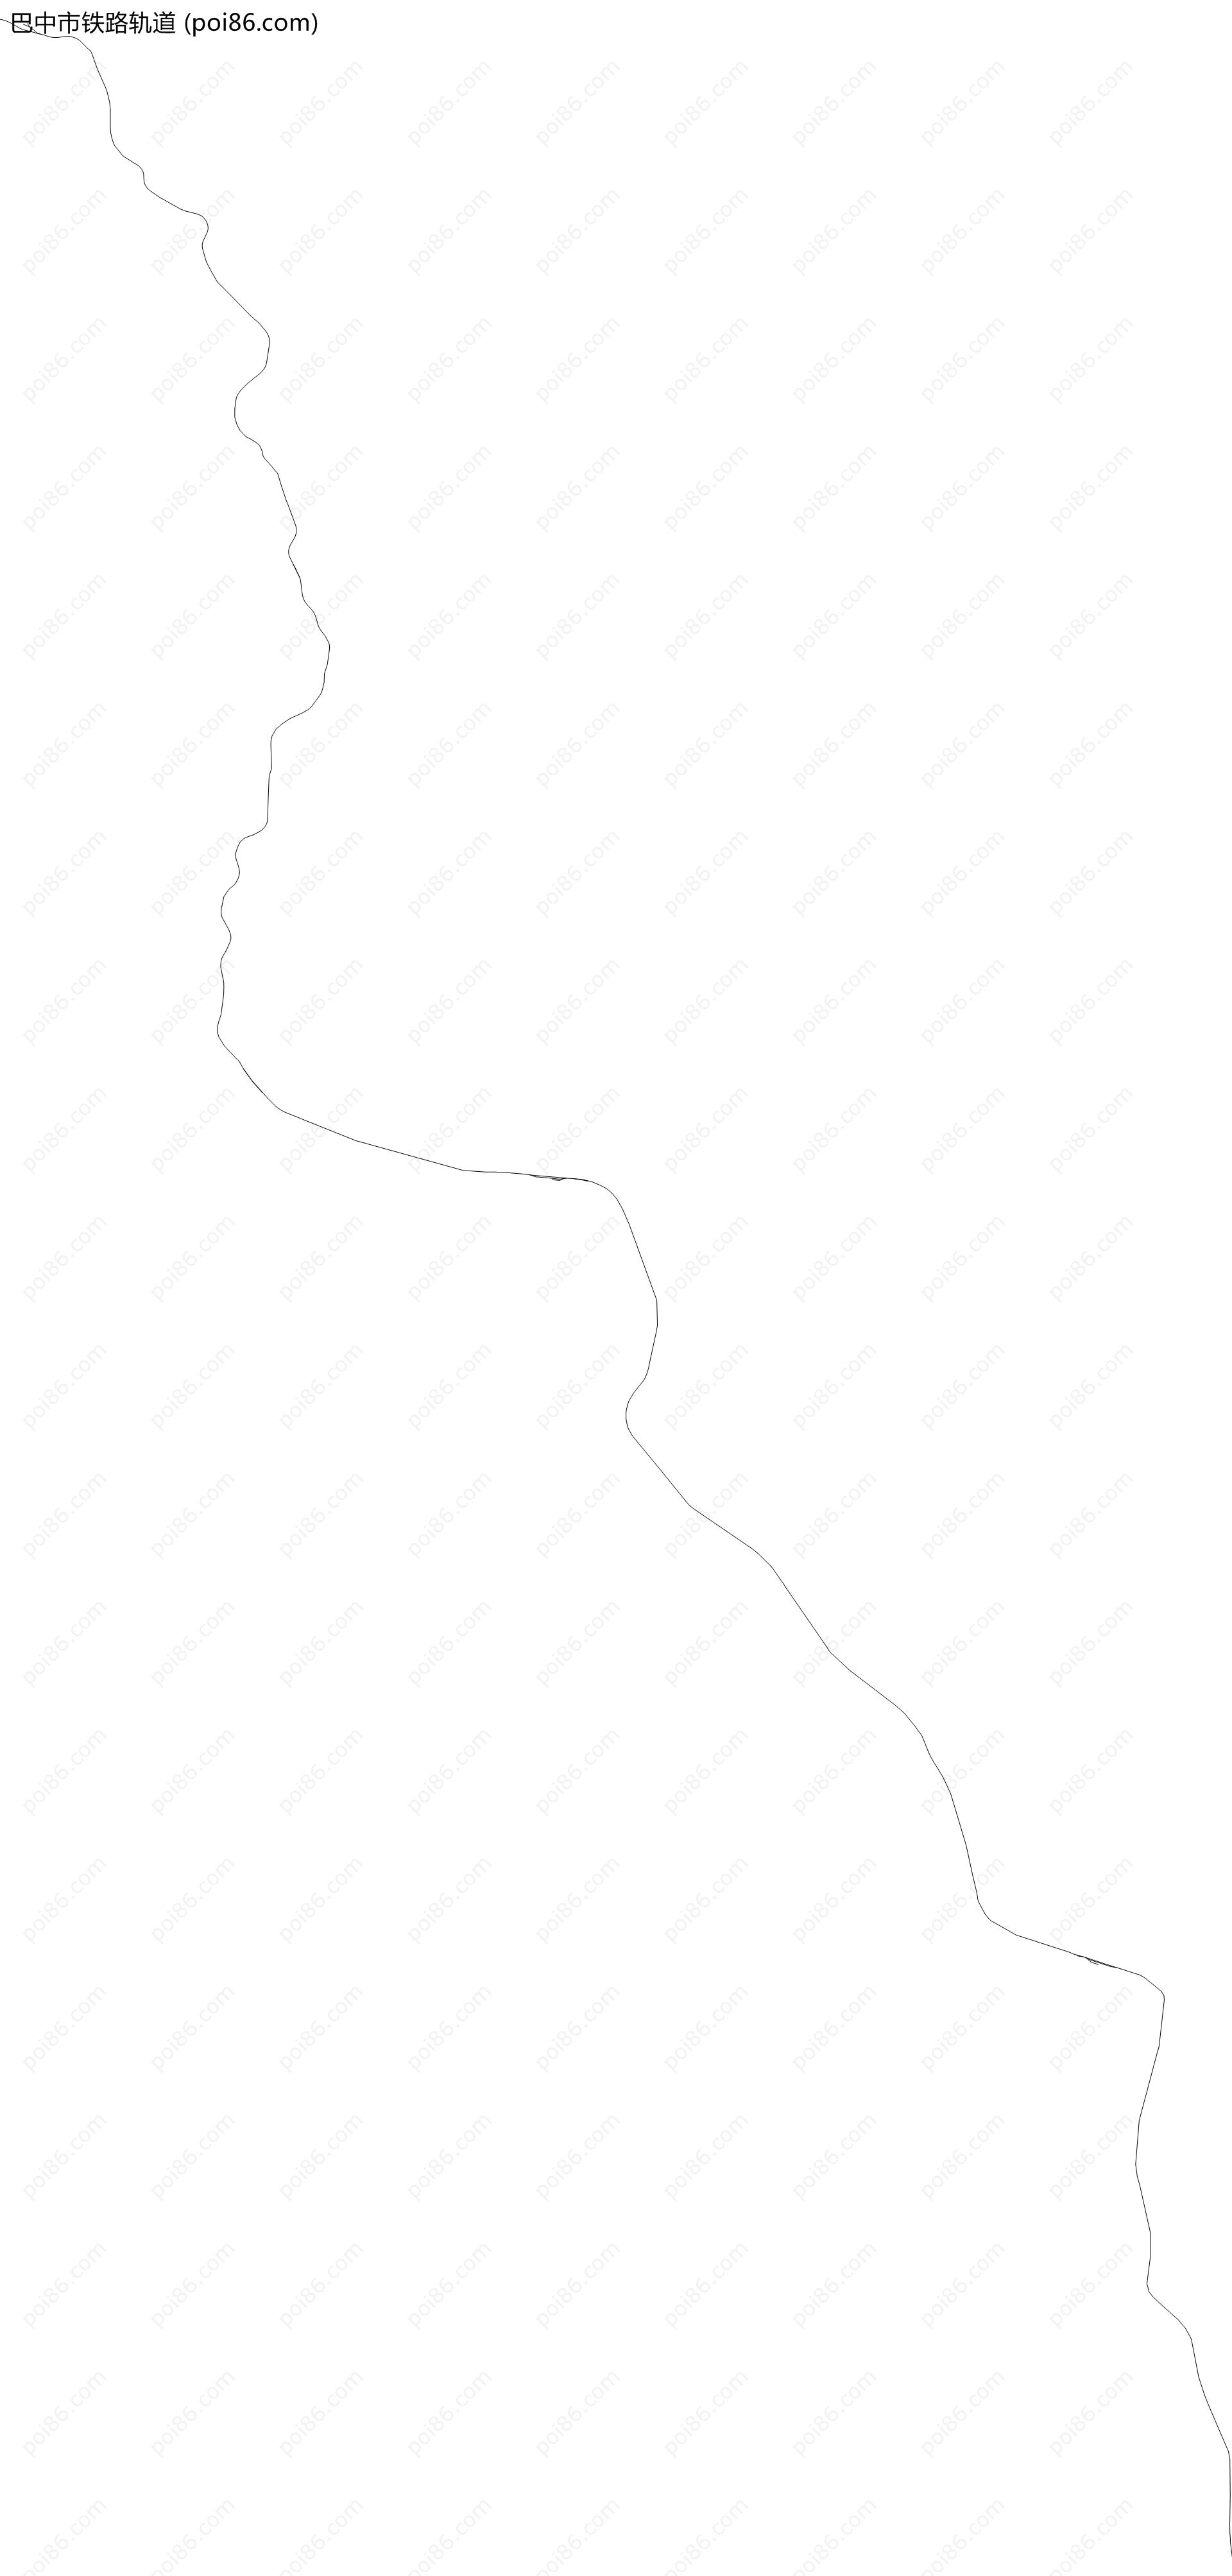 巴中市铁路轨道地图